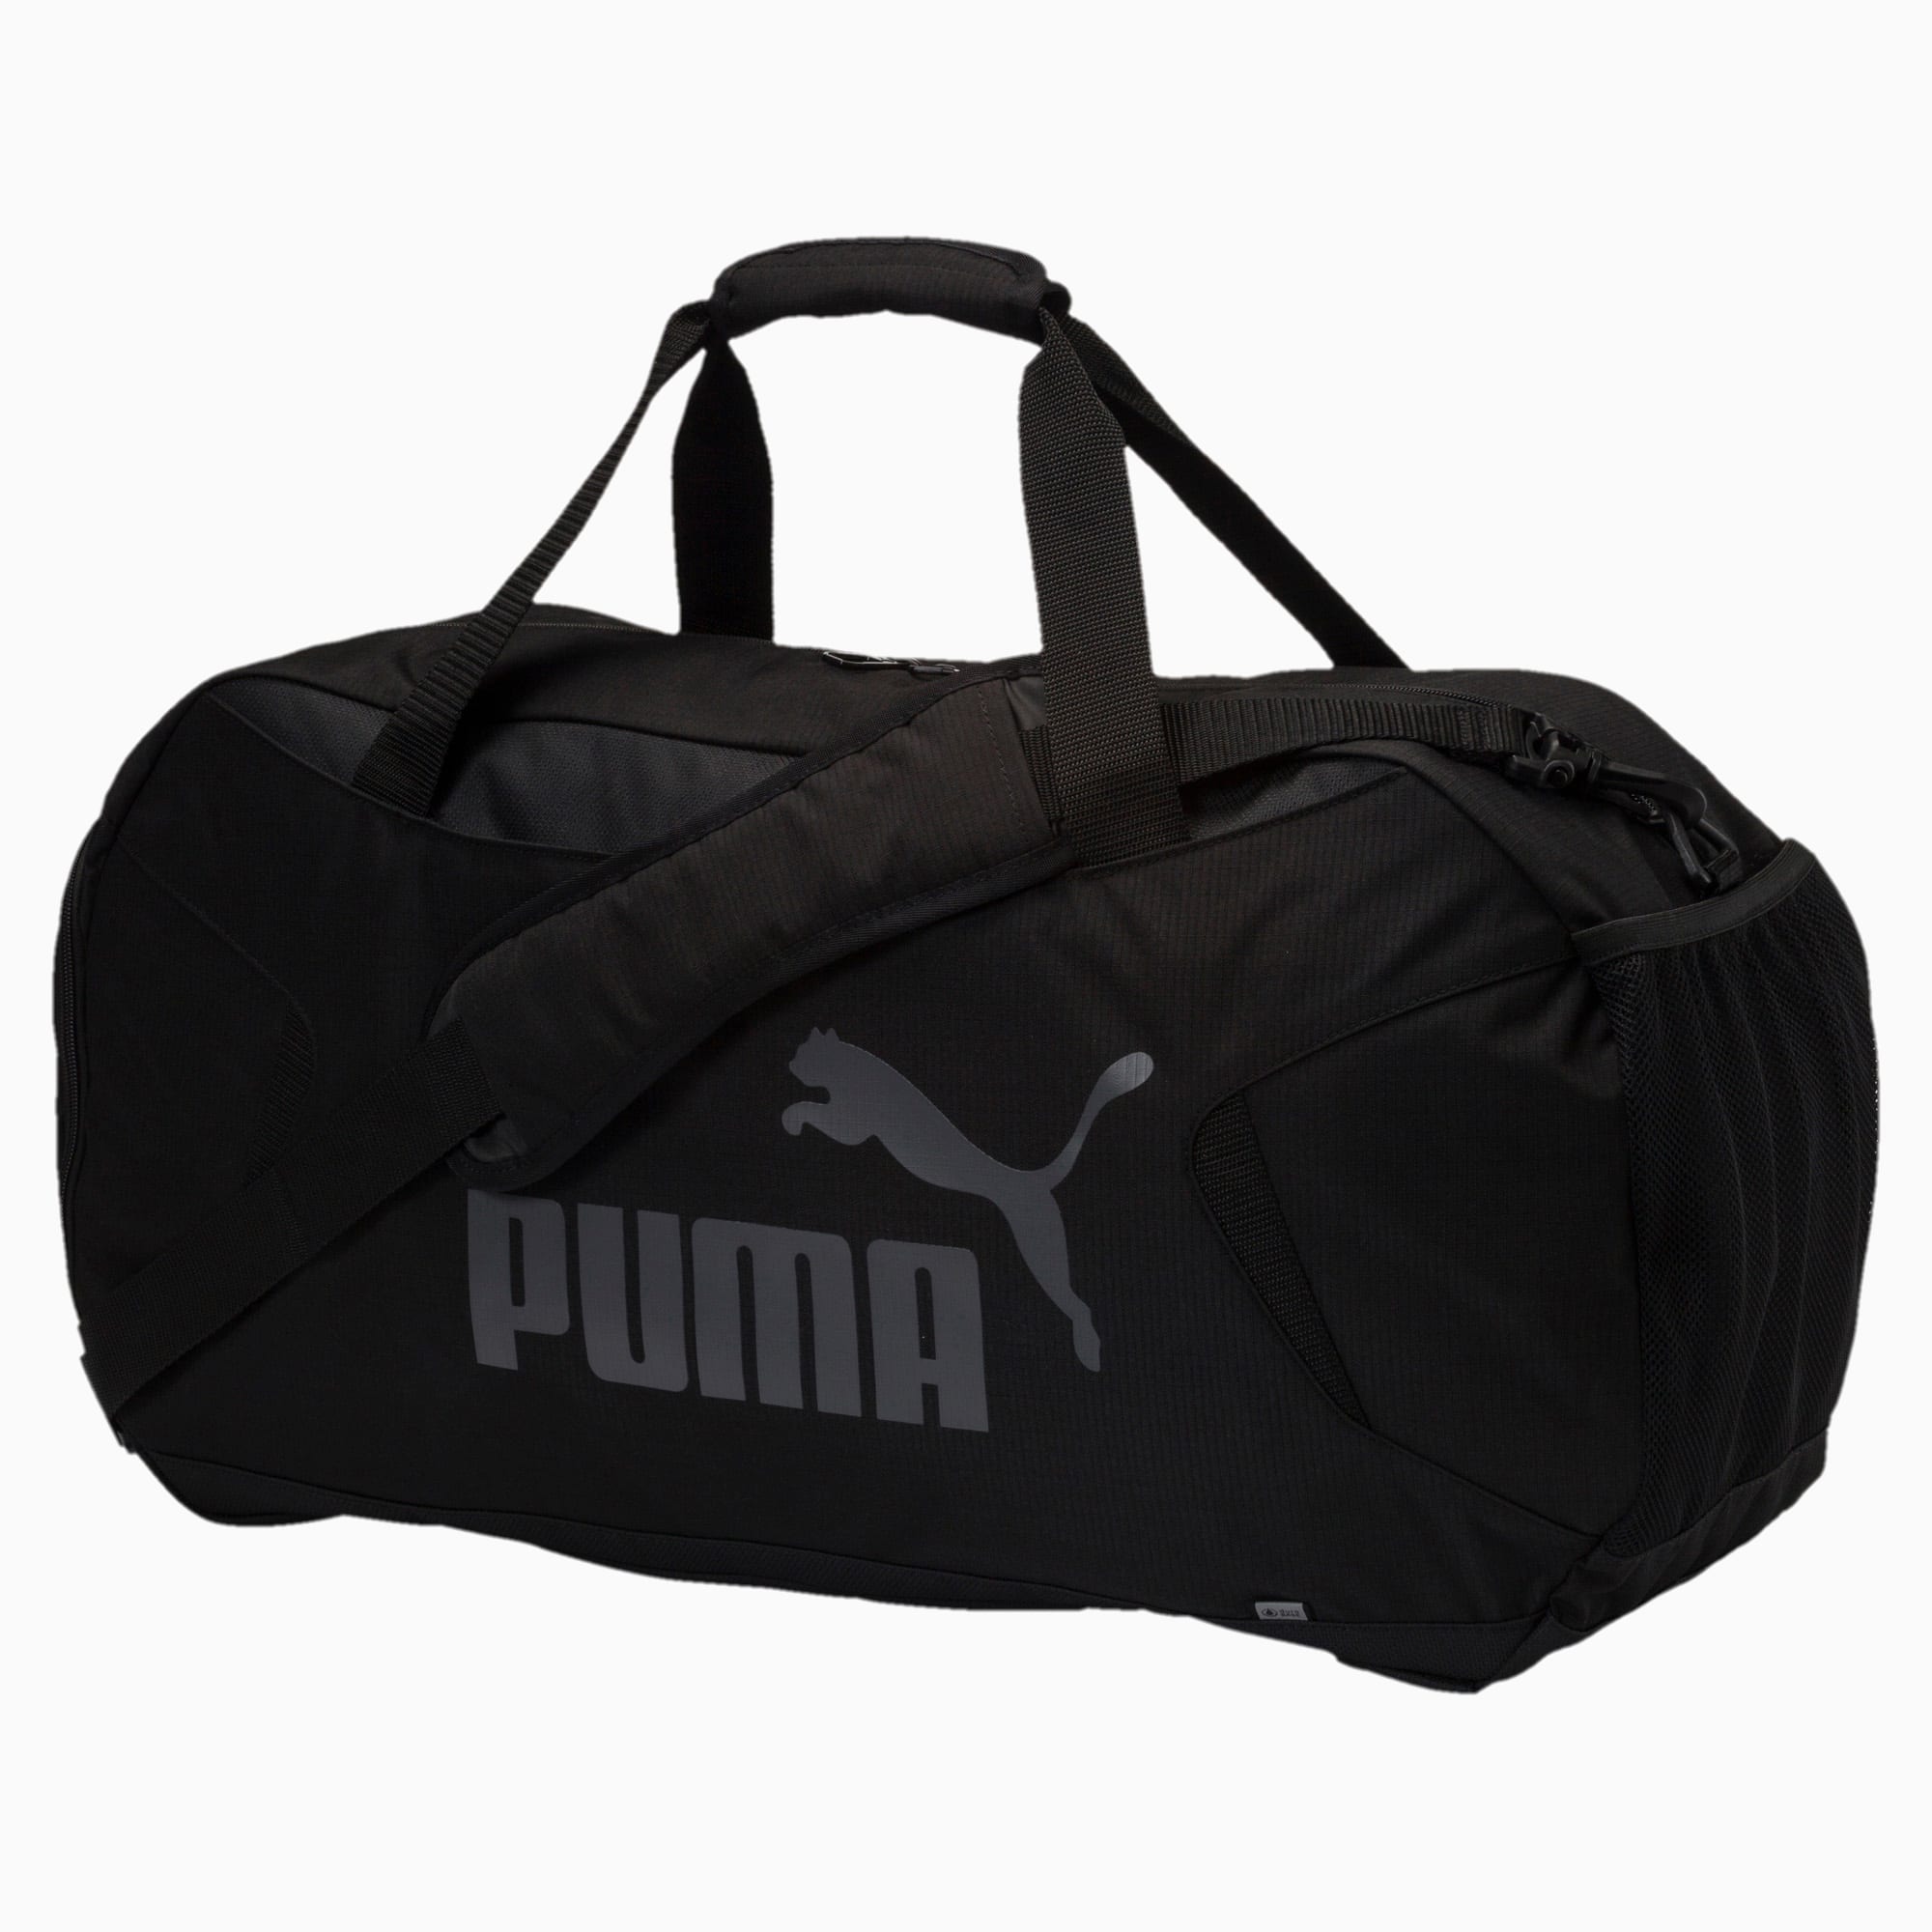 puma duffle gym bag